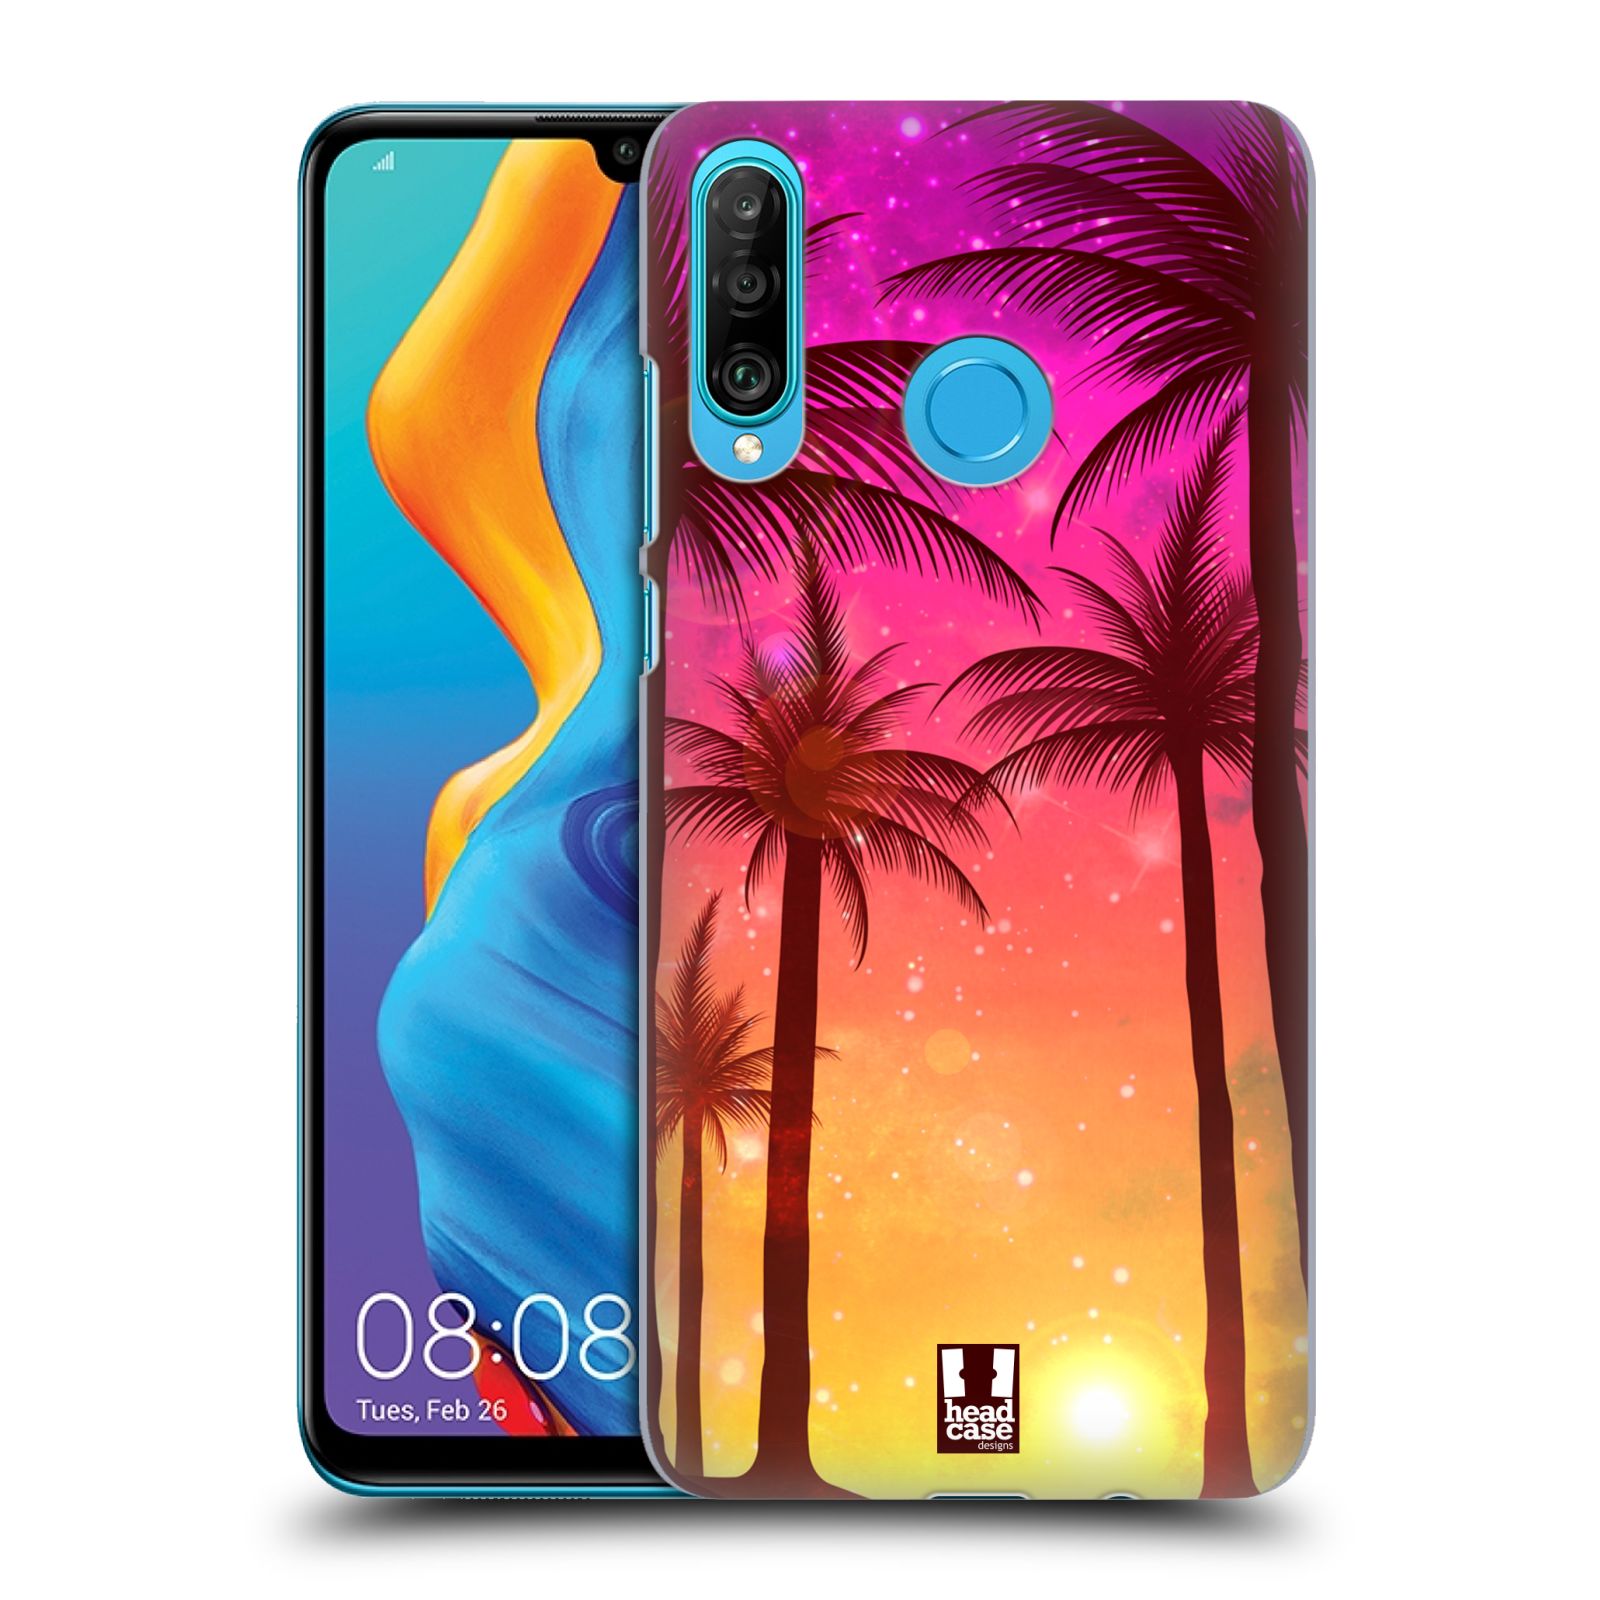 Pouzdro na mobil Huawei P30 LITE - HEAD CASE - vzor Kreslený motiv silueta moře a palmy RŮŽOVÁ